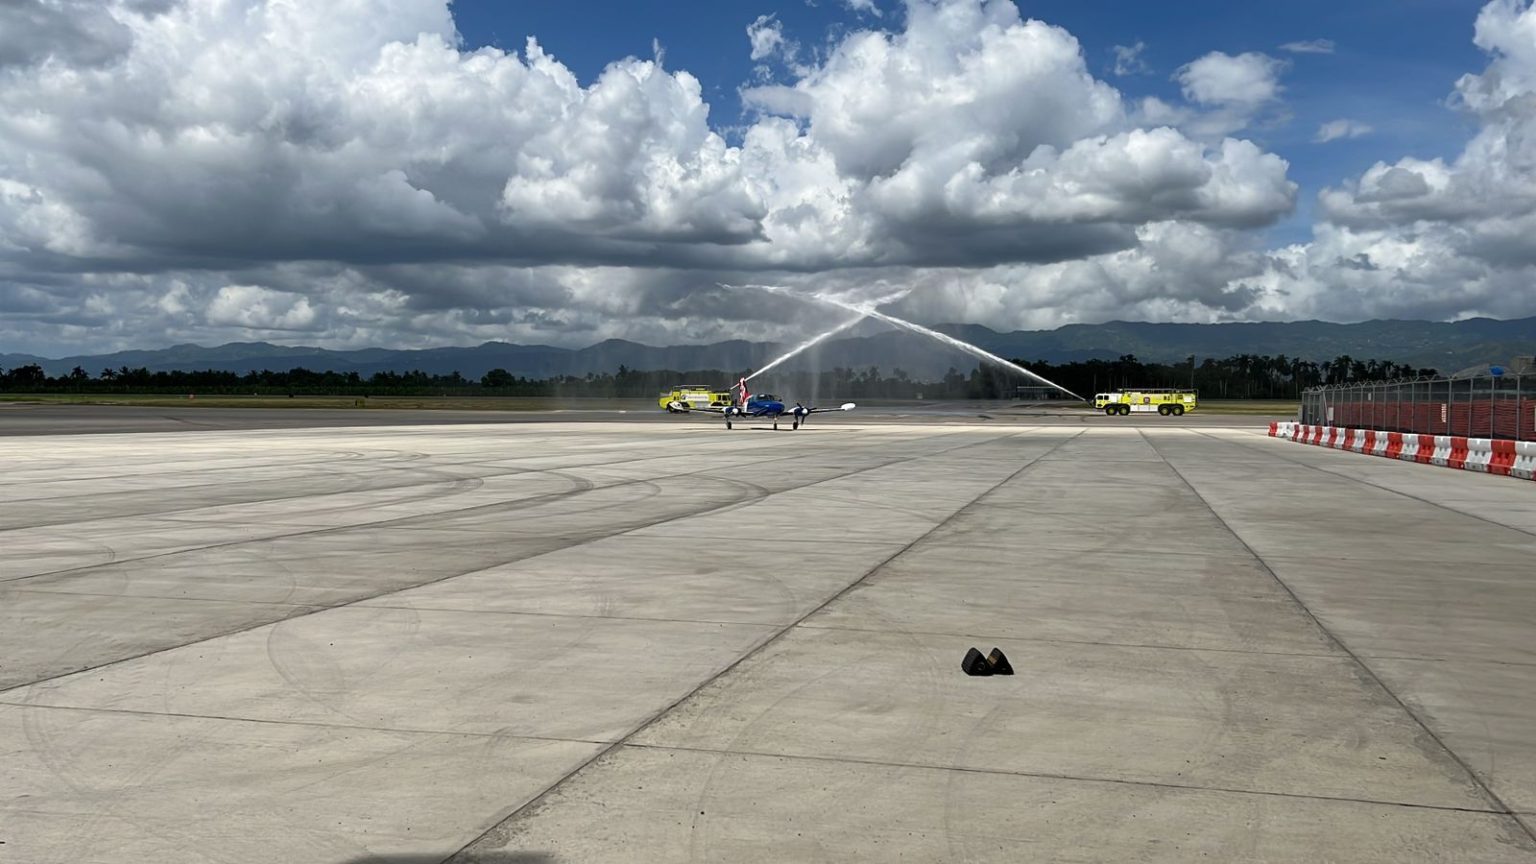 Reef Jet inaugura ruta aerea entre Punta Cana y Santiago